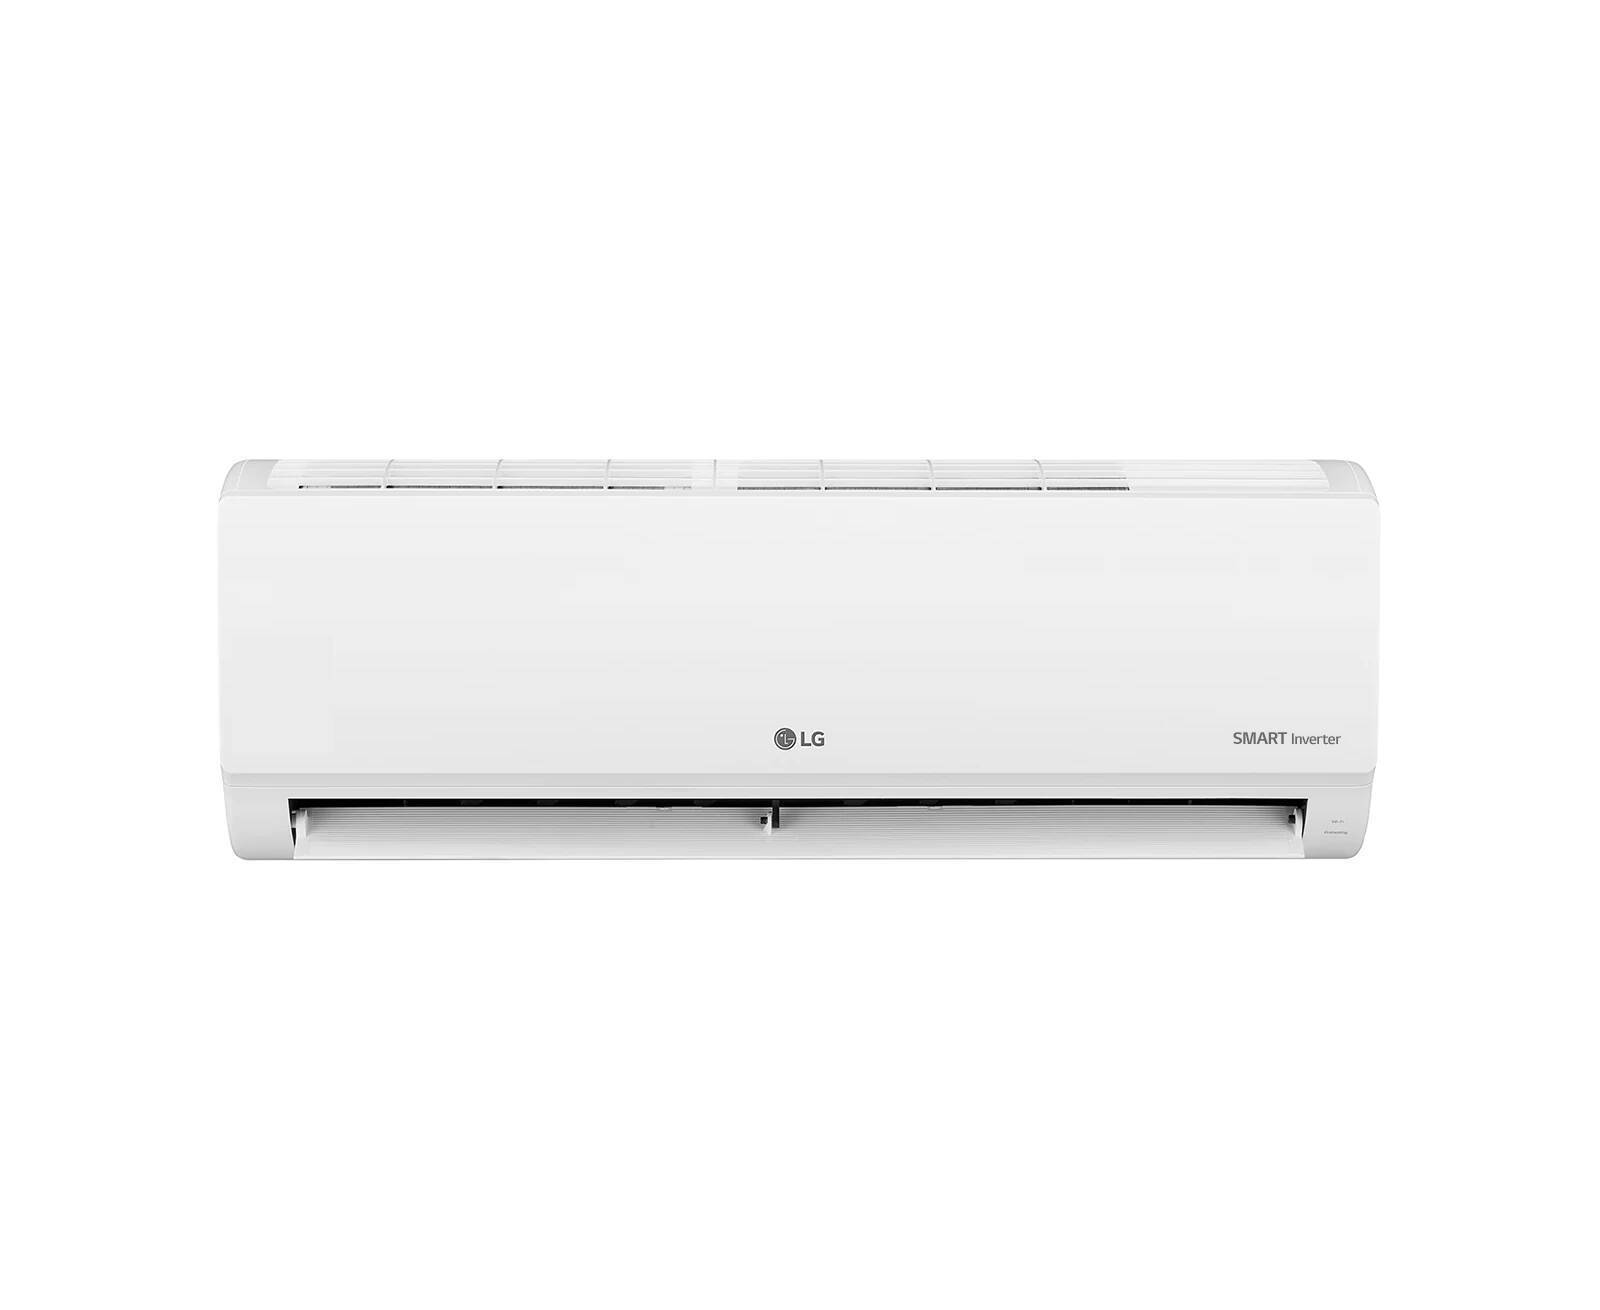 LG 1HP Gencool -B Smart Inverter Split Air Conditioner